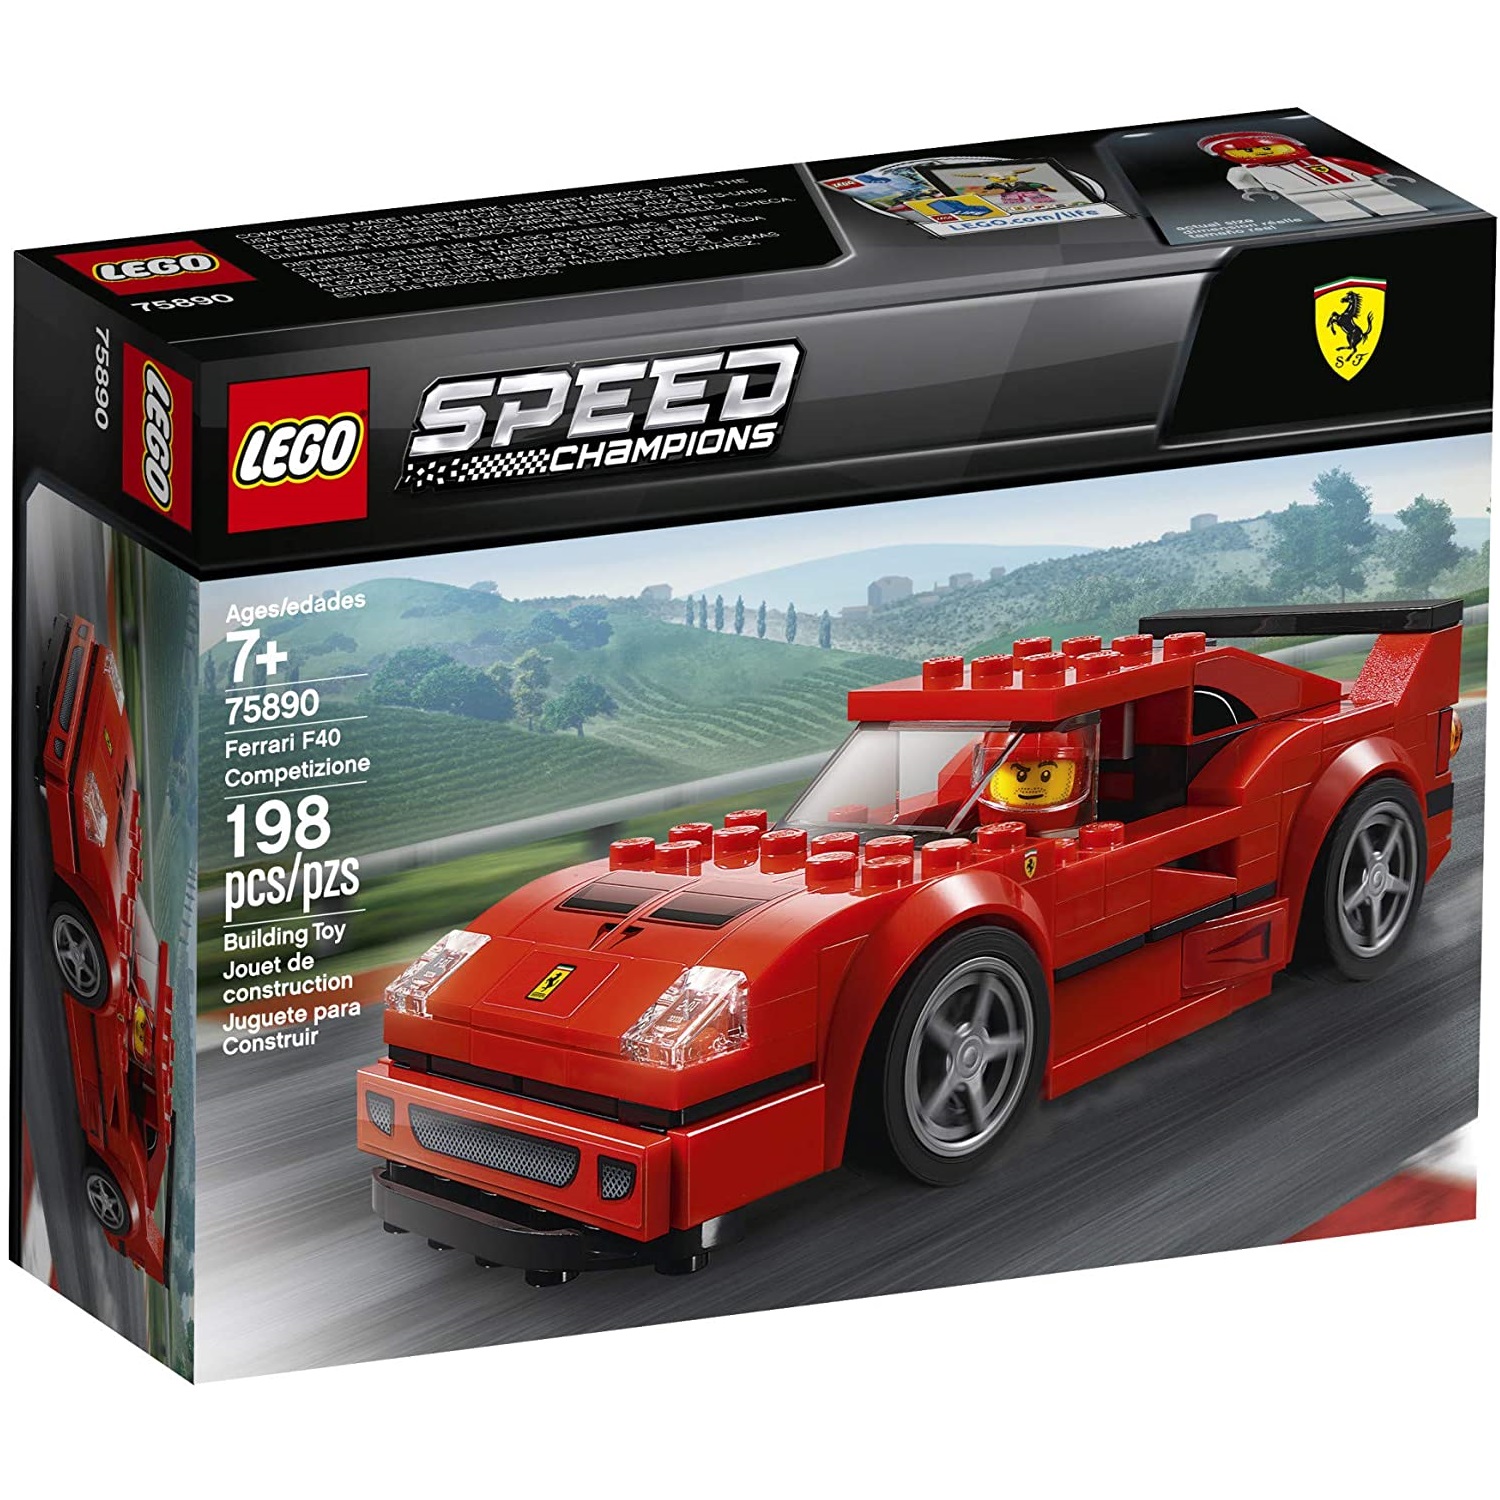 Ferrari F40 Competizione, L75890, Lego Speed Champions